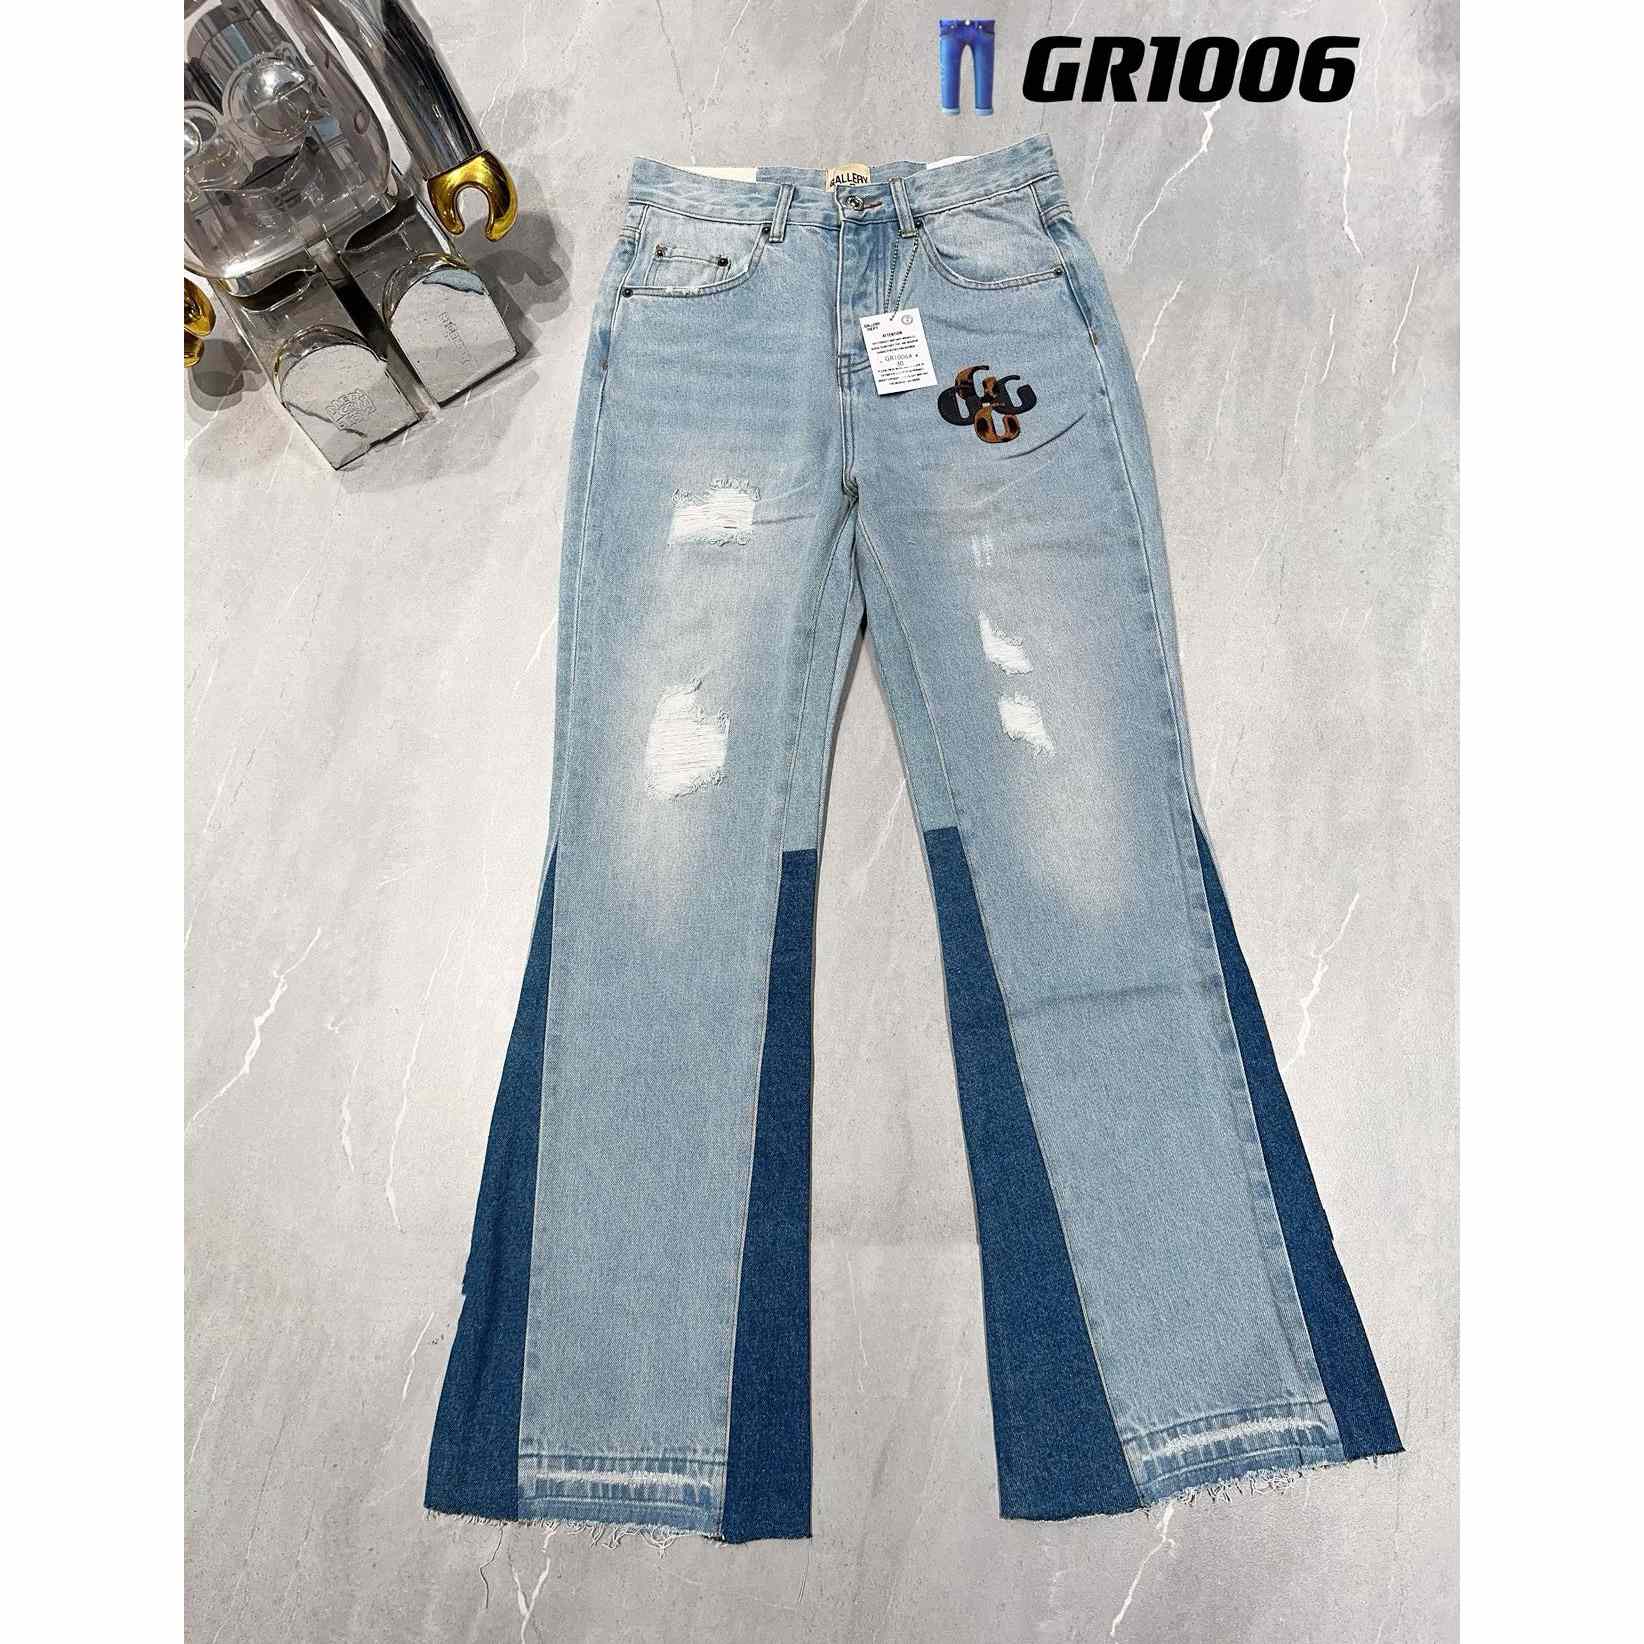 Gallery Dept. Jeans   GR1006 - everydesigner